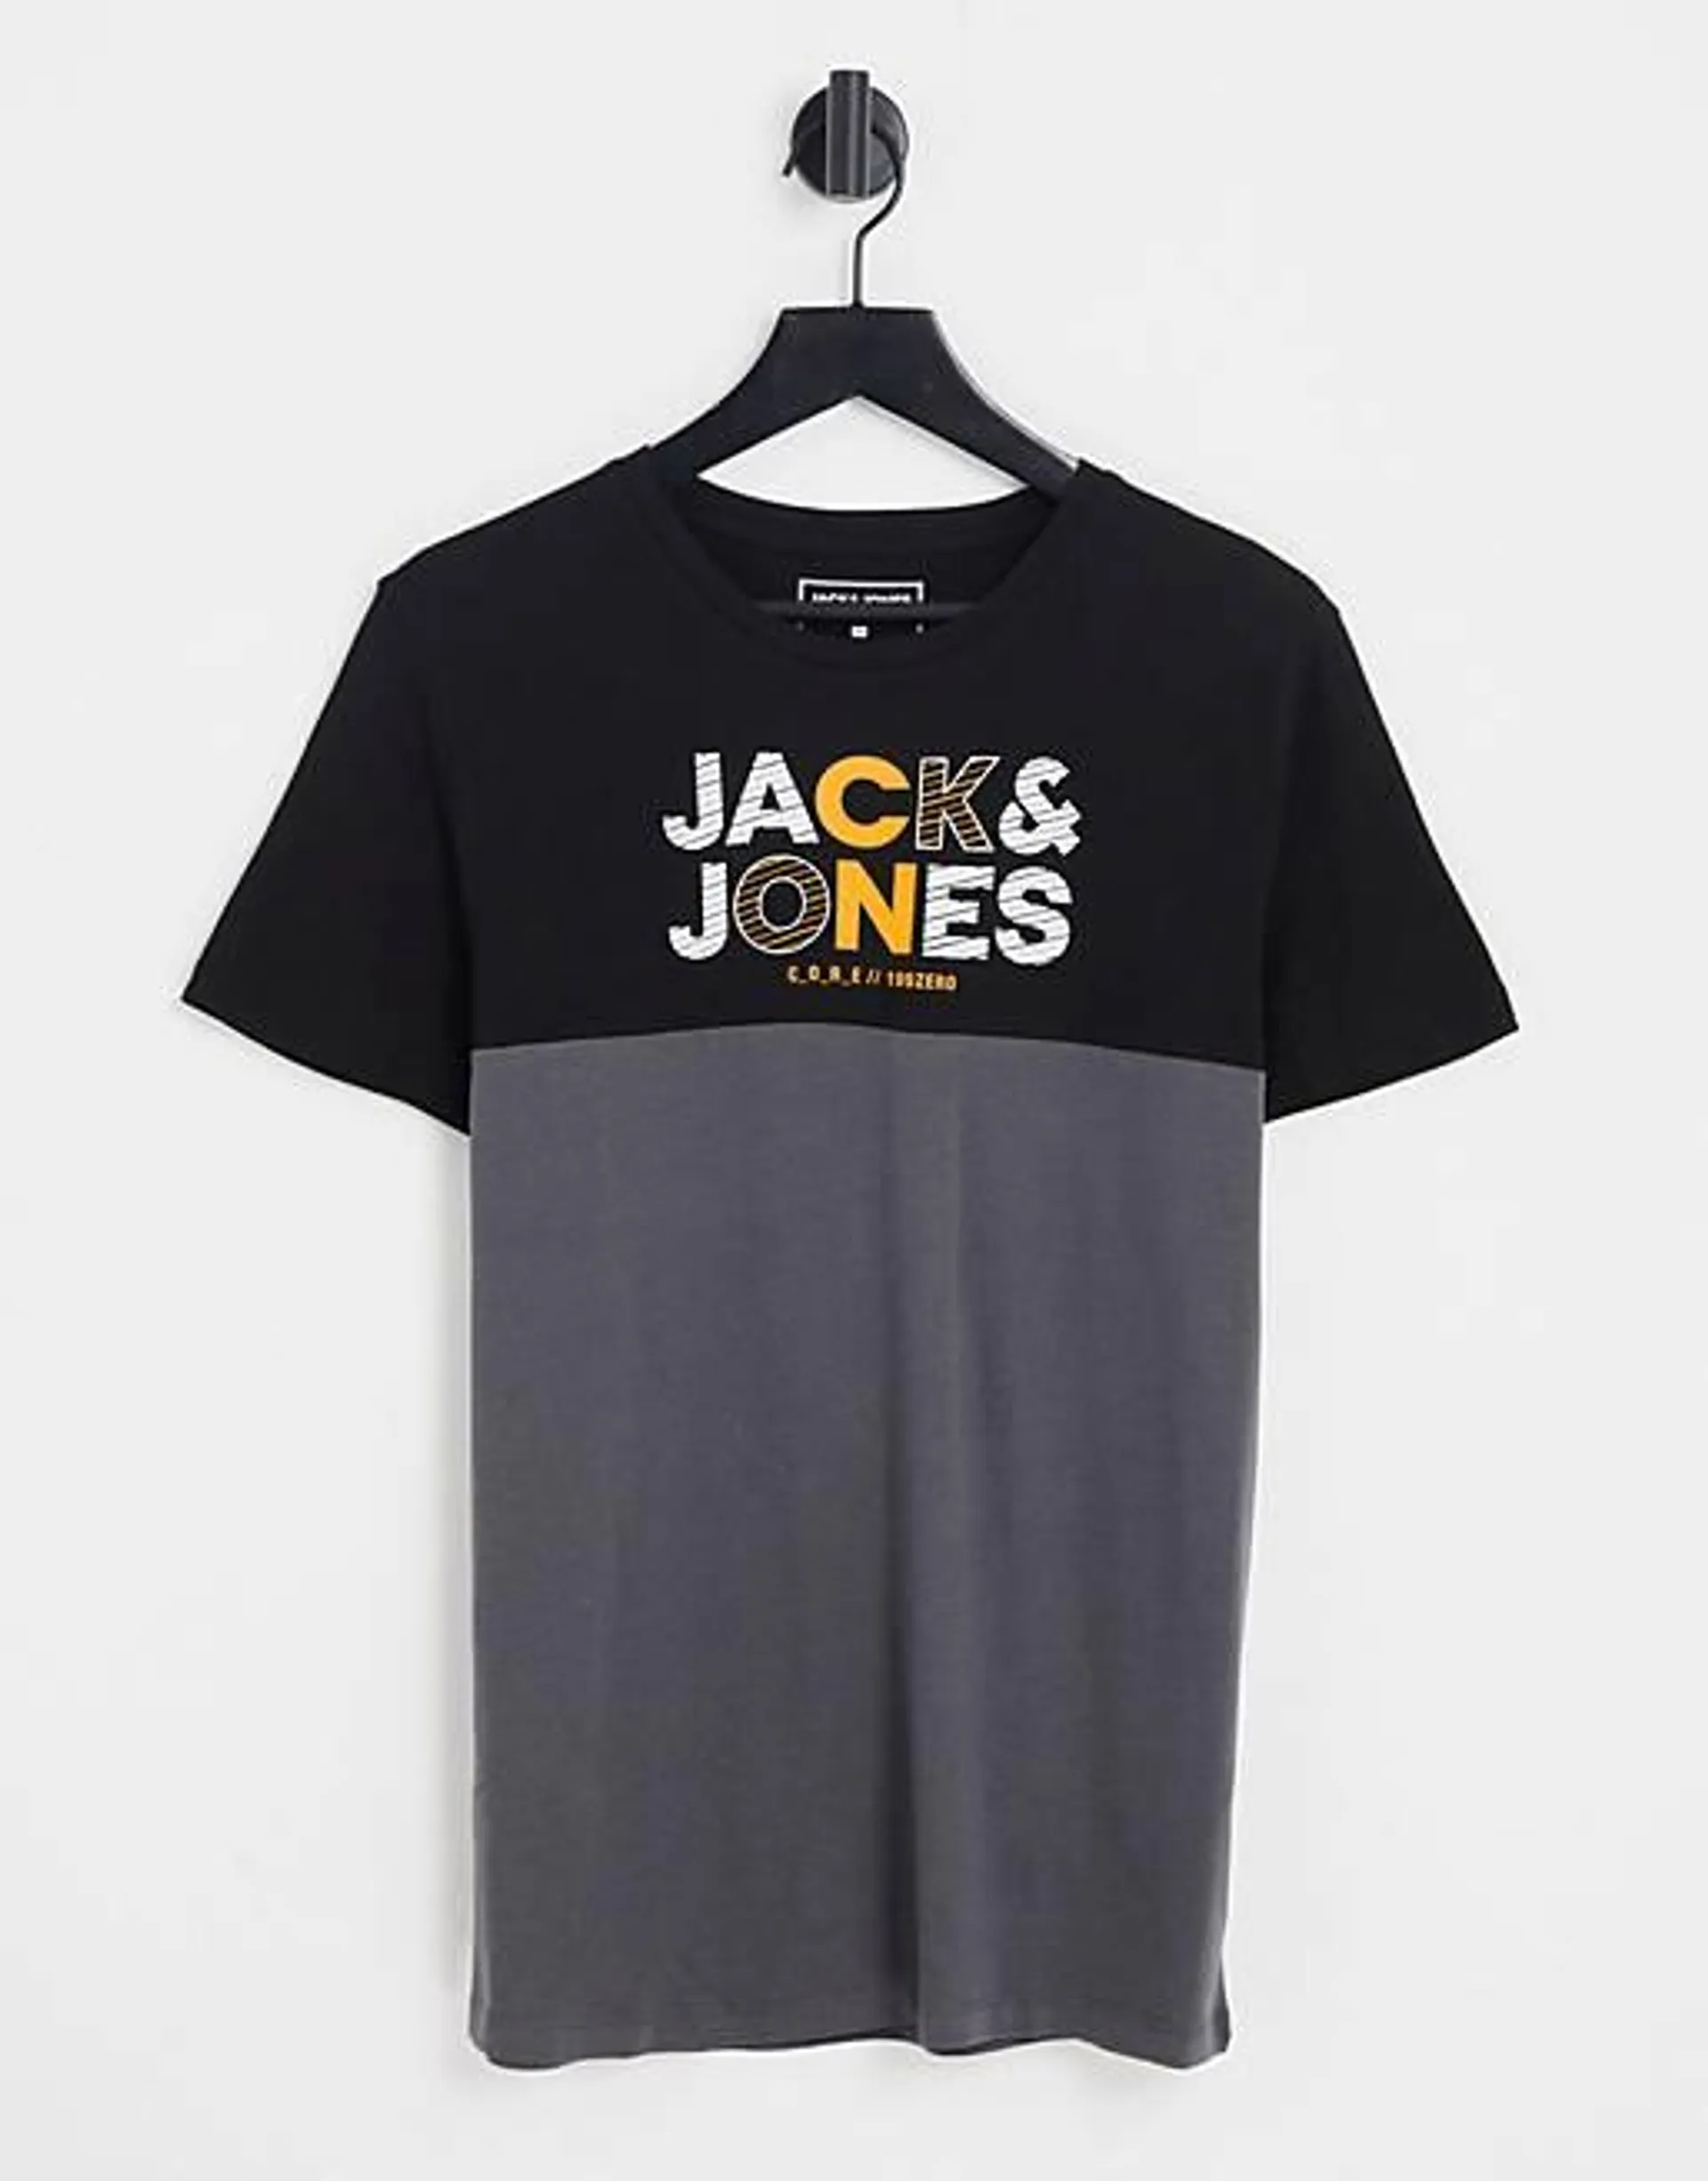 Jack & Jones crew neck logo t-shirt in black